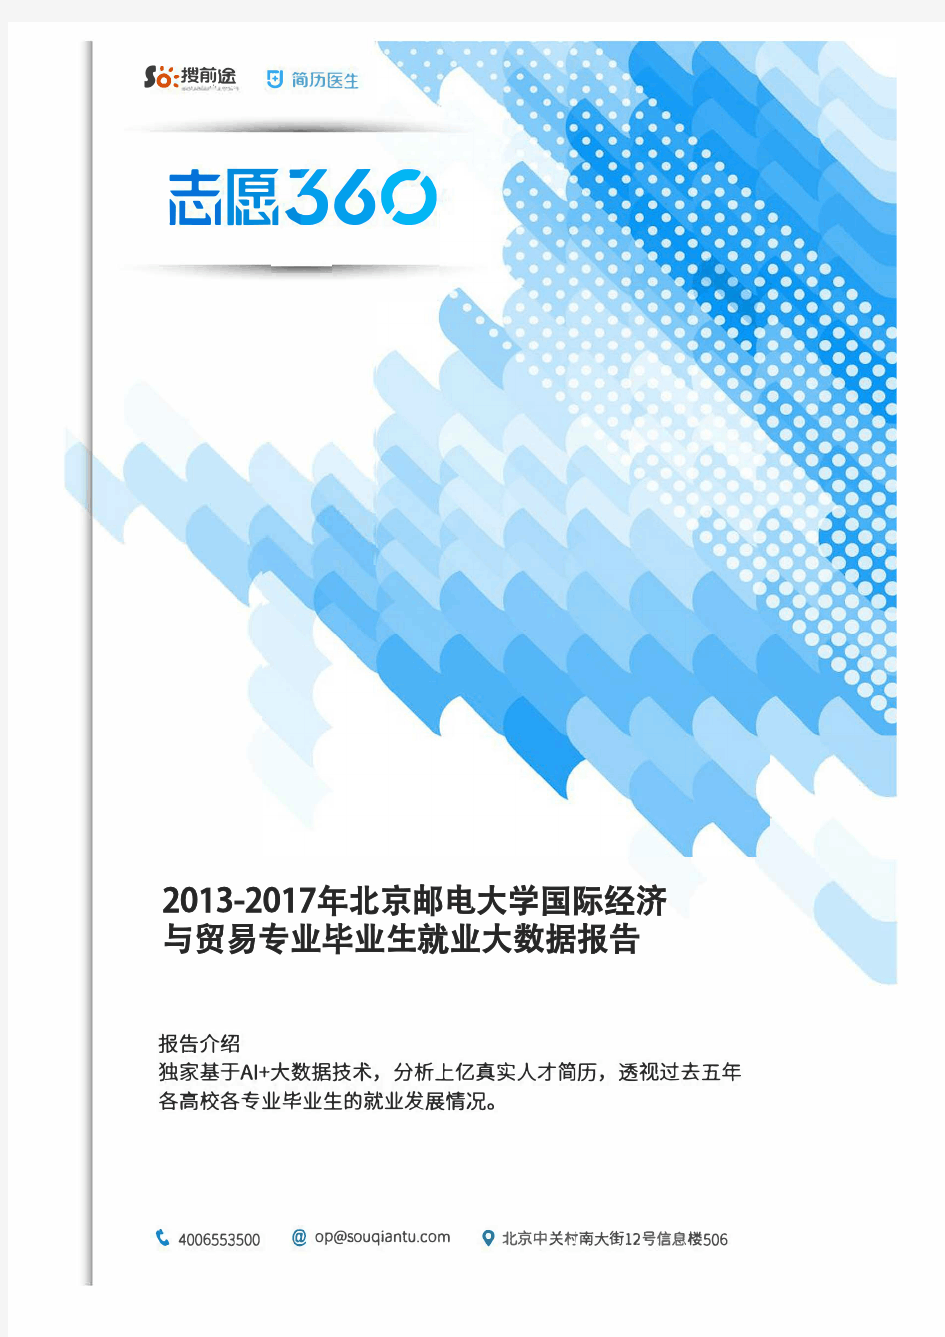 2013-2017年北京邮电大学国际经济与贸易专业毕业生就业大数据报告